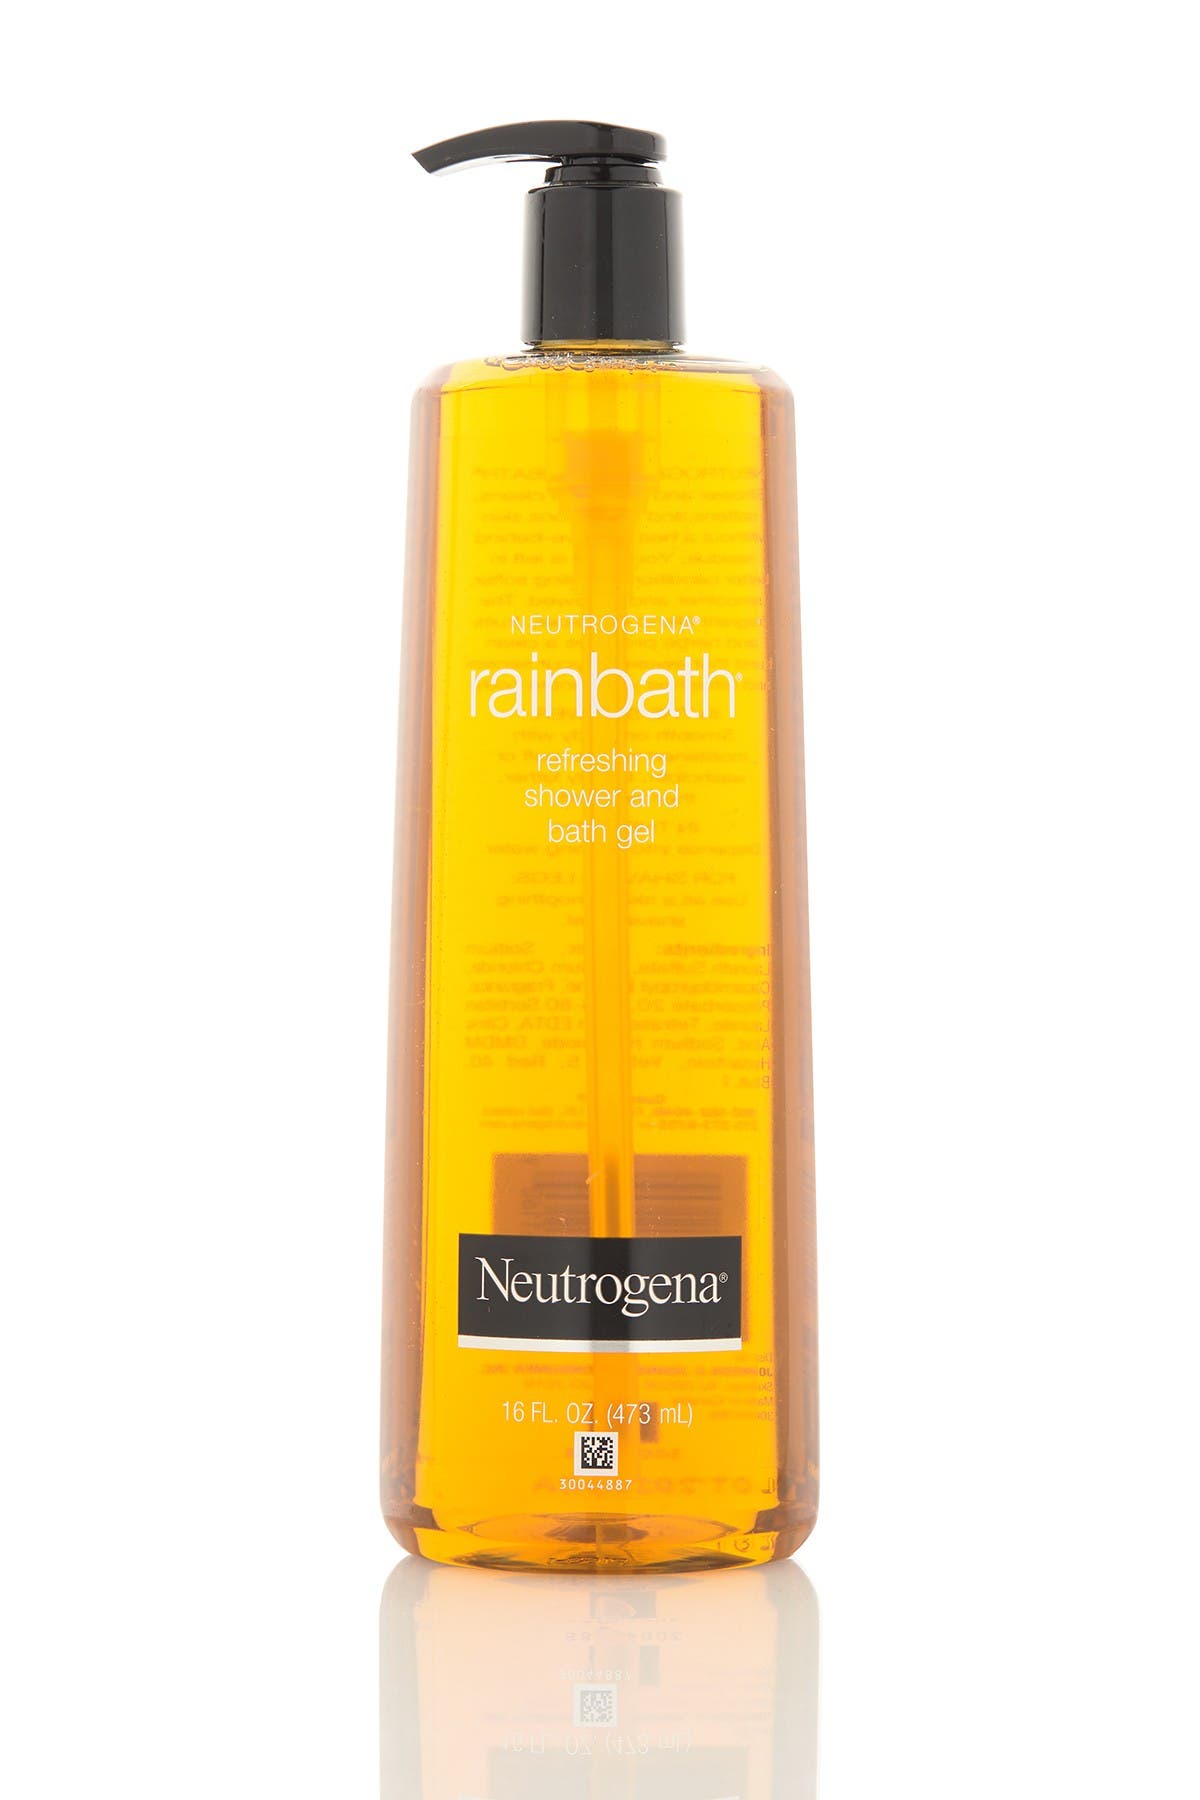 Rainbath Refreshing Shower and Bath Gel, Original - 16 fl. oz. Neutrogena